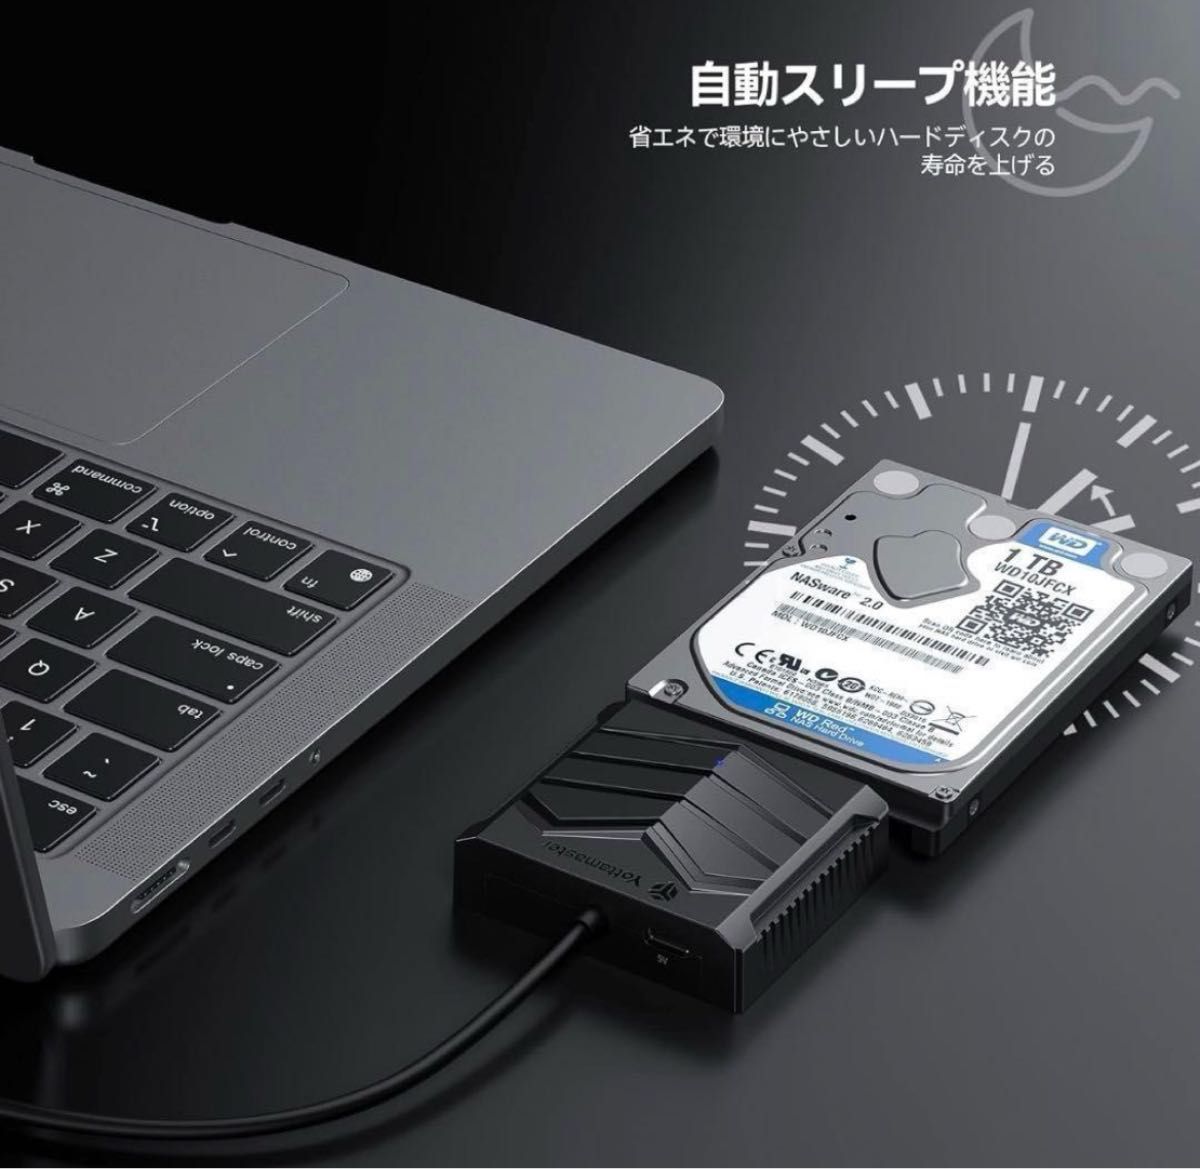 USB 変換ケーブル USB 変換アダプター AHDD/SSD対応 高速転送速度